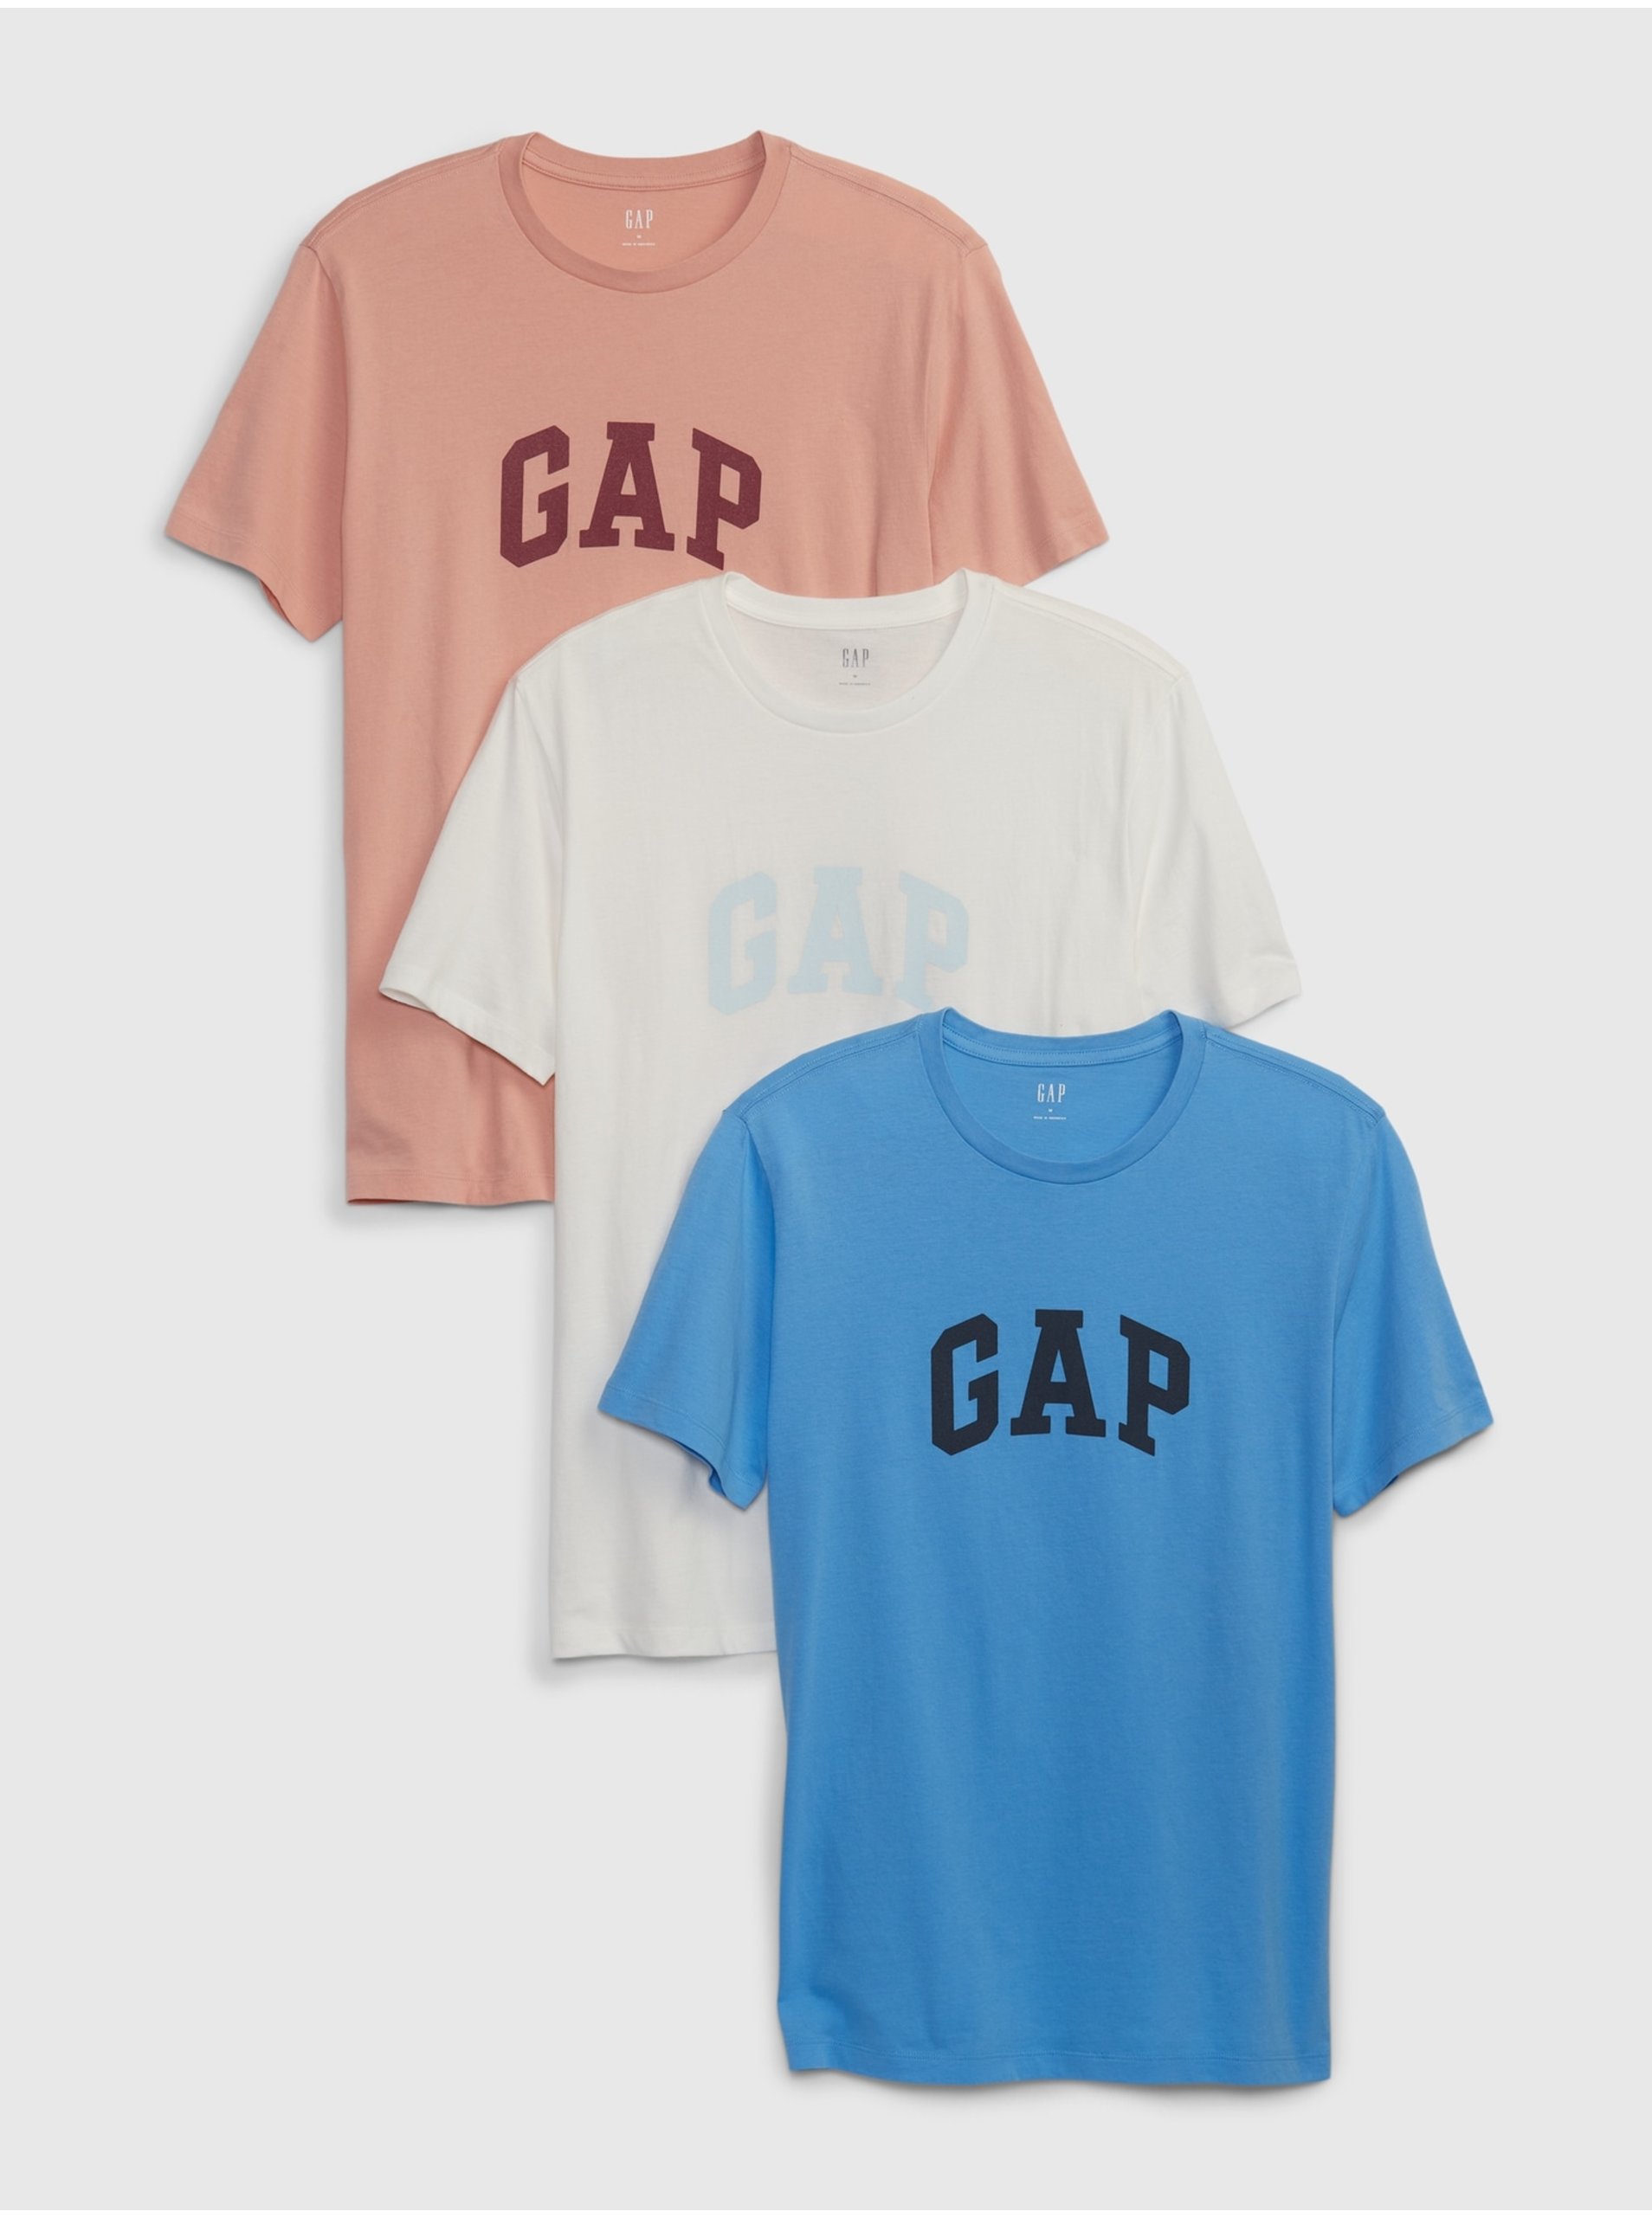 E-shop Barevné pánské tričko s logem GAP, 3ks